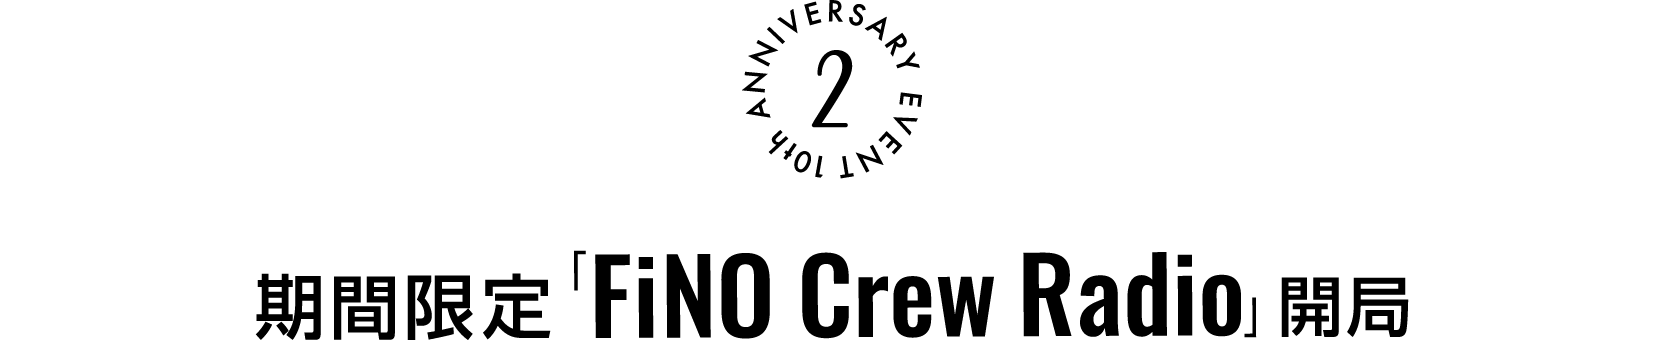 期間限定「FiNO Crew Radio」開局